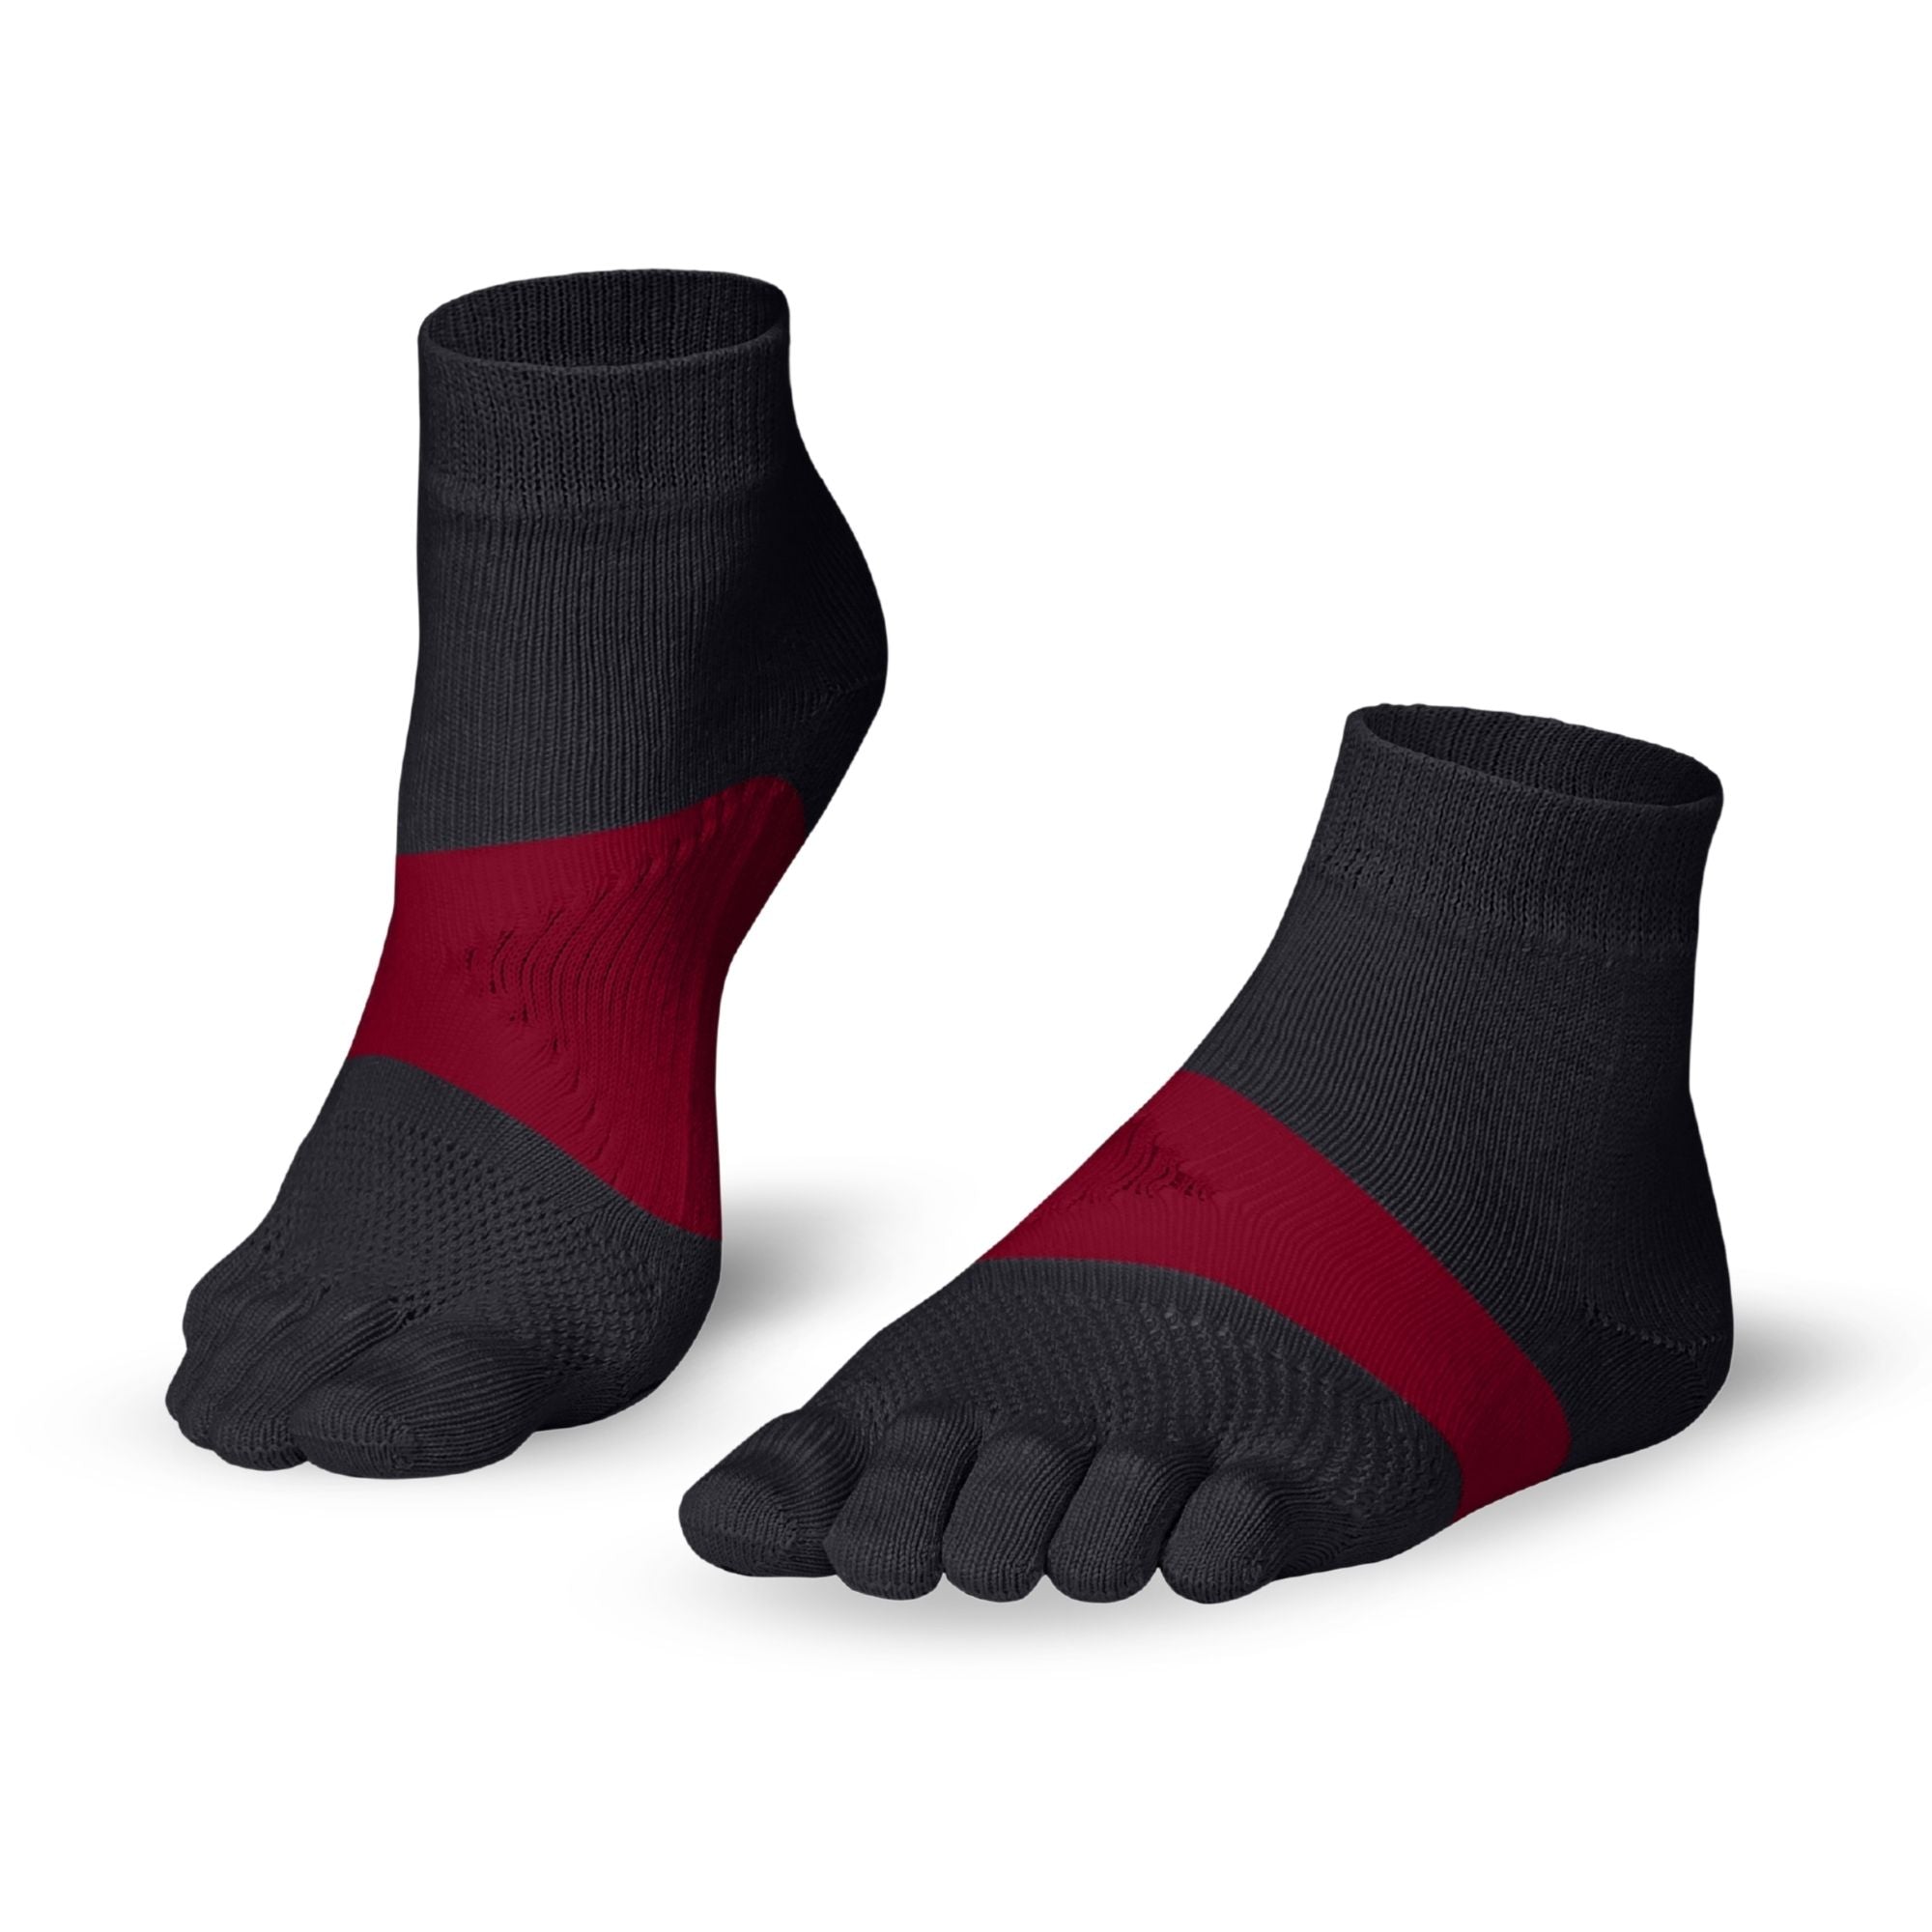 Knitido Marathon chaussettes à orteils pour le sport et les courses de longue distance - gris / rouge carmin